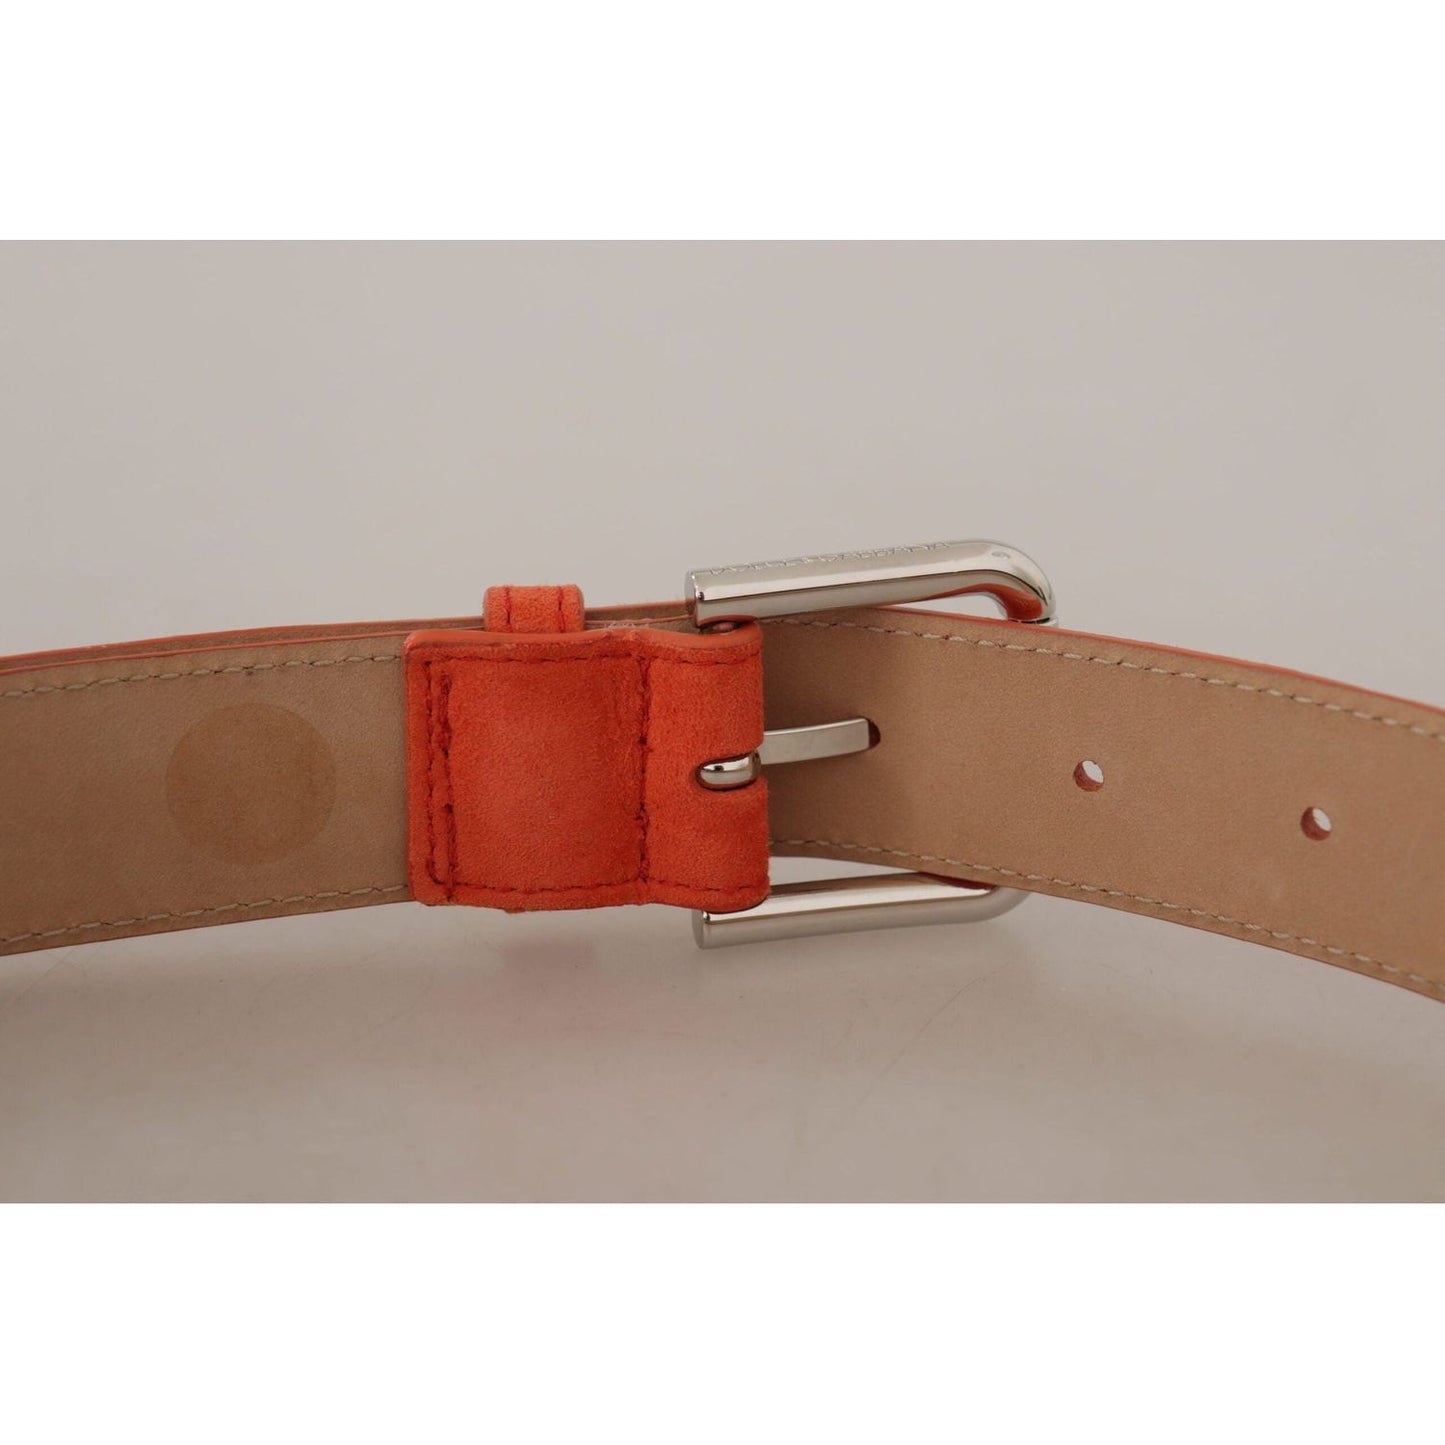 Dolce & Gabbana Elegant Suede Leather Belt in Vibrant Orange orange-leather-suede-silver-logo-metal-buckle-belt IMG_8853-scaled-314810f6-789.jpg